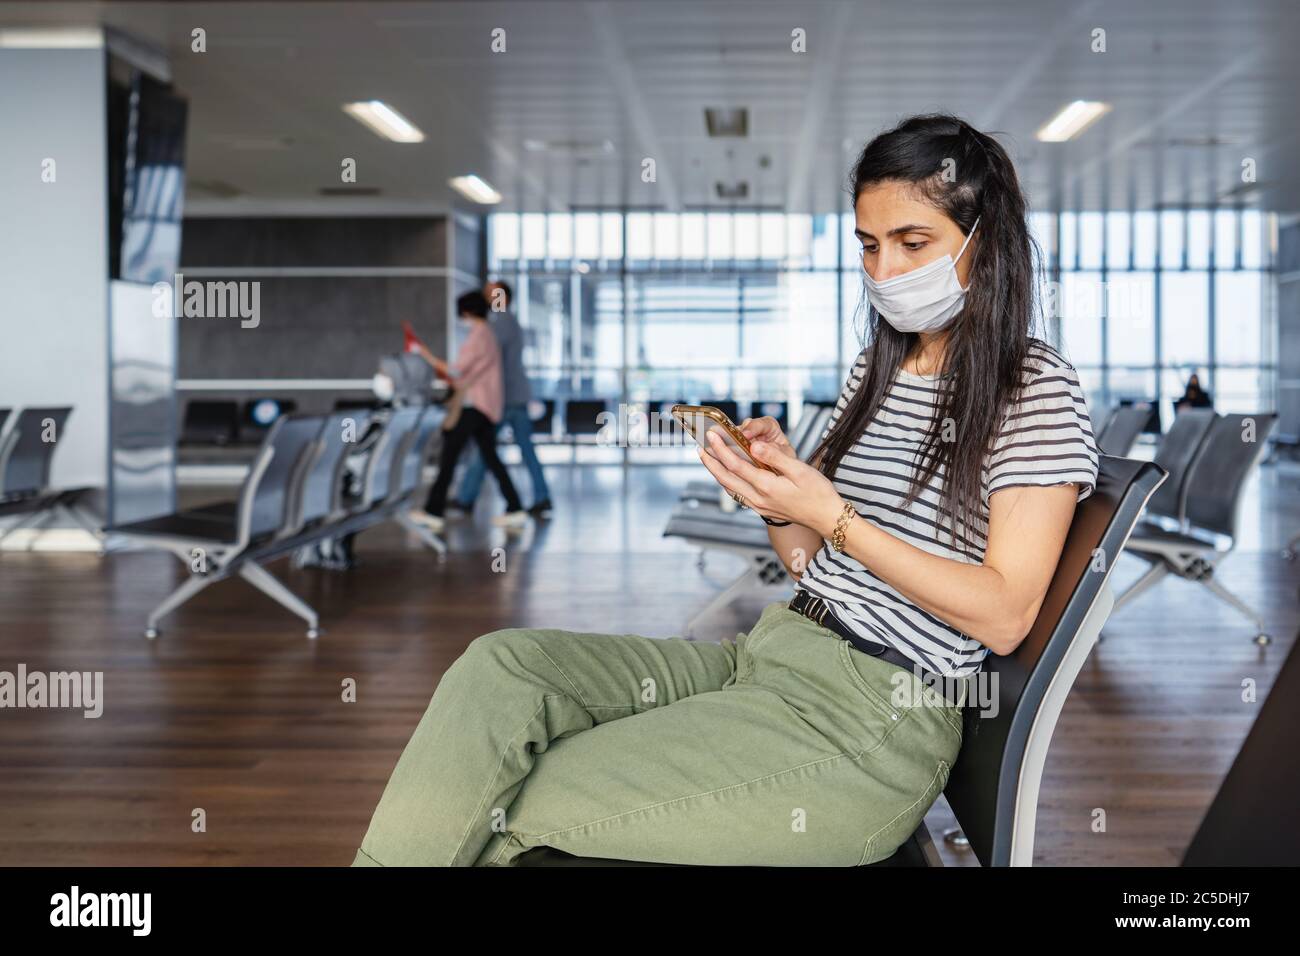 La maschera di protezione per giovani donne è seduta in una sala d'attesa e guarda il suo telefono cellulare all'aeroporto. Interruzione del virus corona. Foto di alta qualità Foto Stock